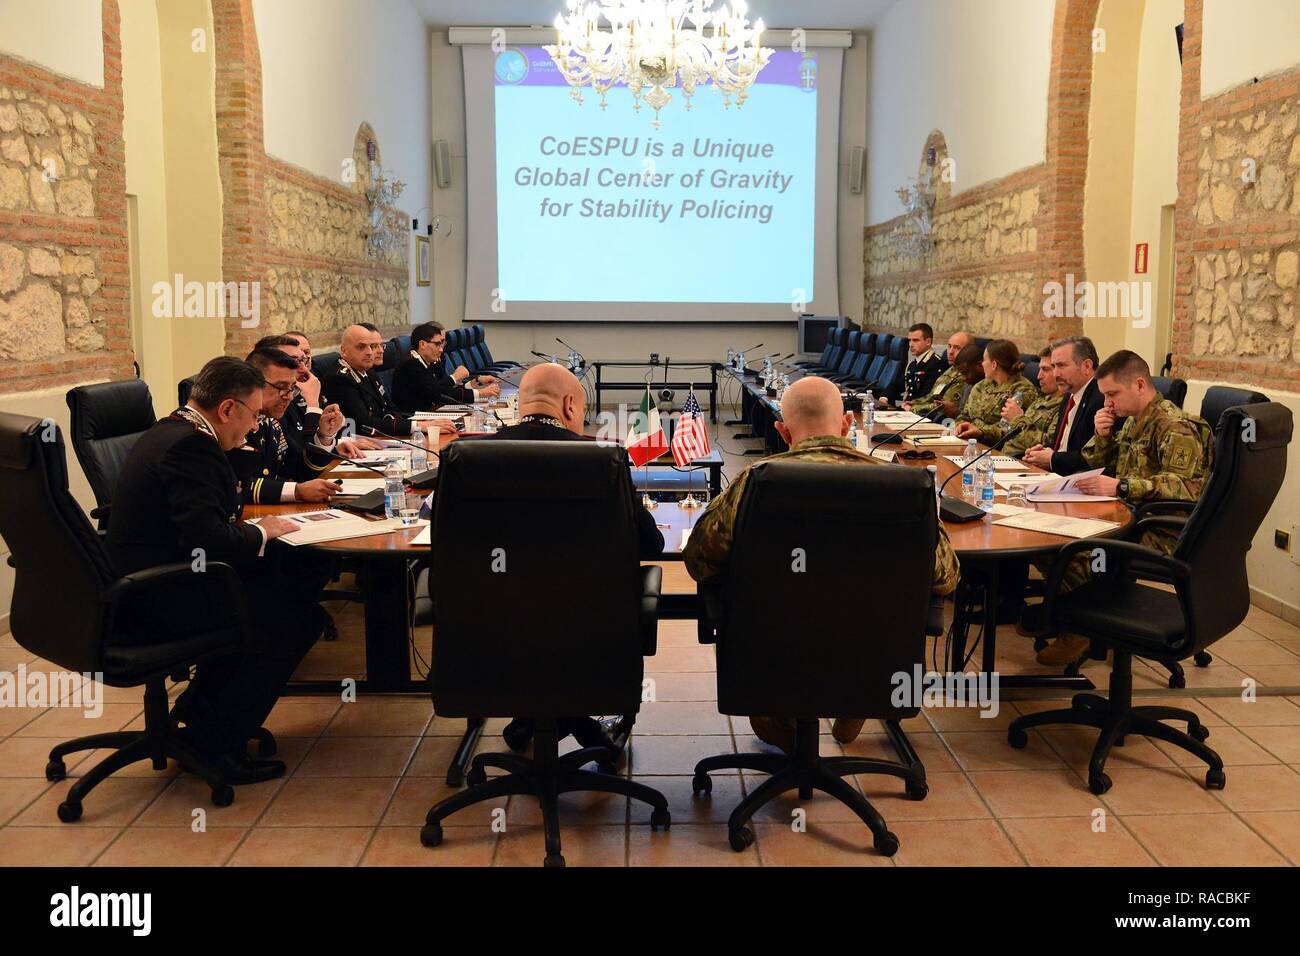 Carabineros y personal de EE.UU., asistir a un centro de excelencia para unidades de policía de estabilidad (CoESPU), celebrada durante la visita al (CoESPU), del Teniente General Charles D. Luckey, Comandante General del comando de Reserva del Ejército de Estados Unidos , de Vicenza, Italia, 20 de enero de 2017. Foto de stock